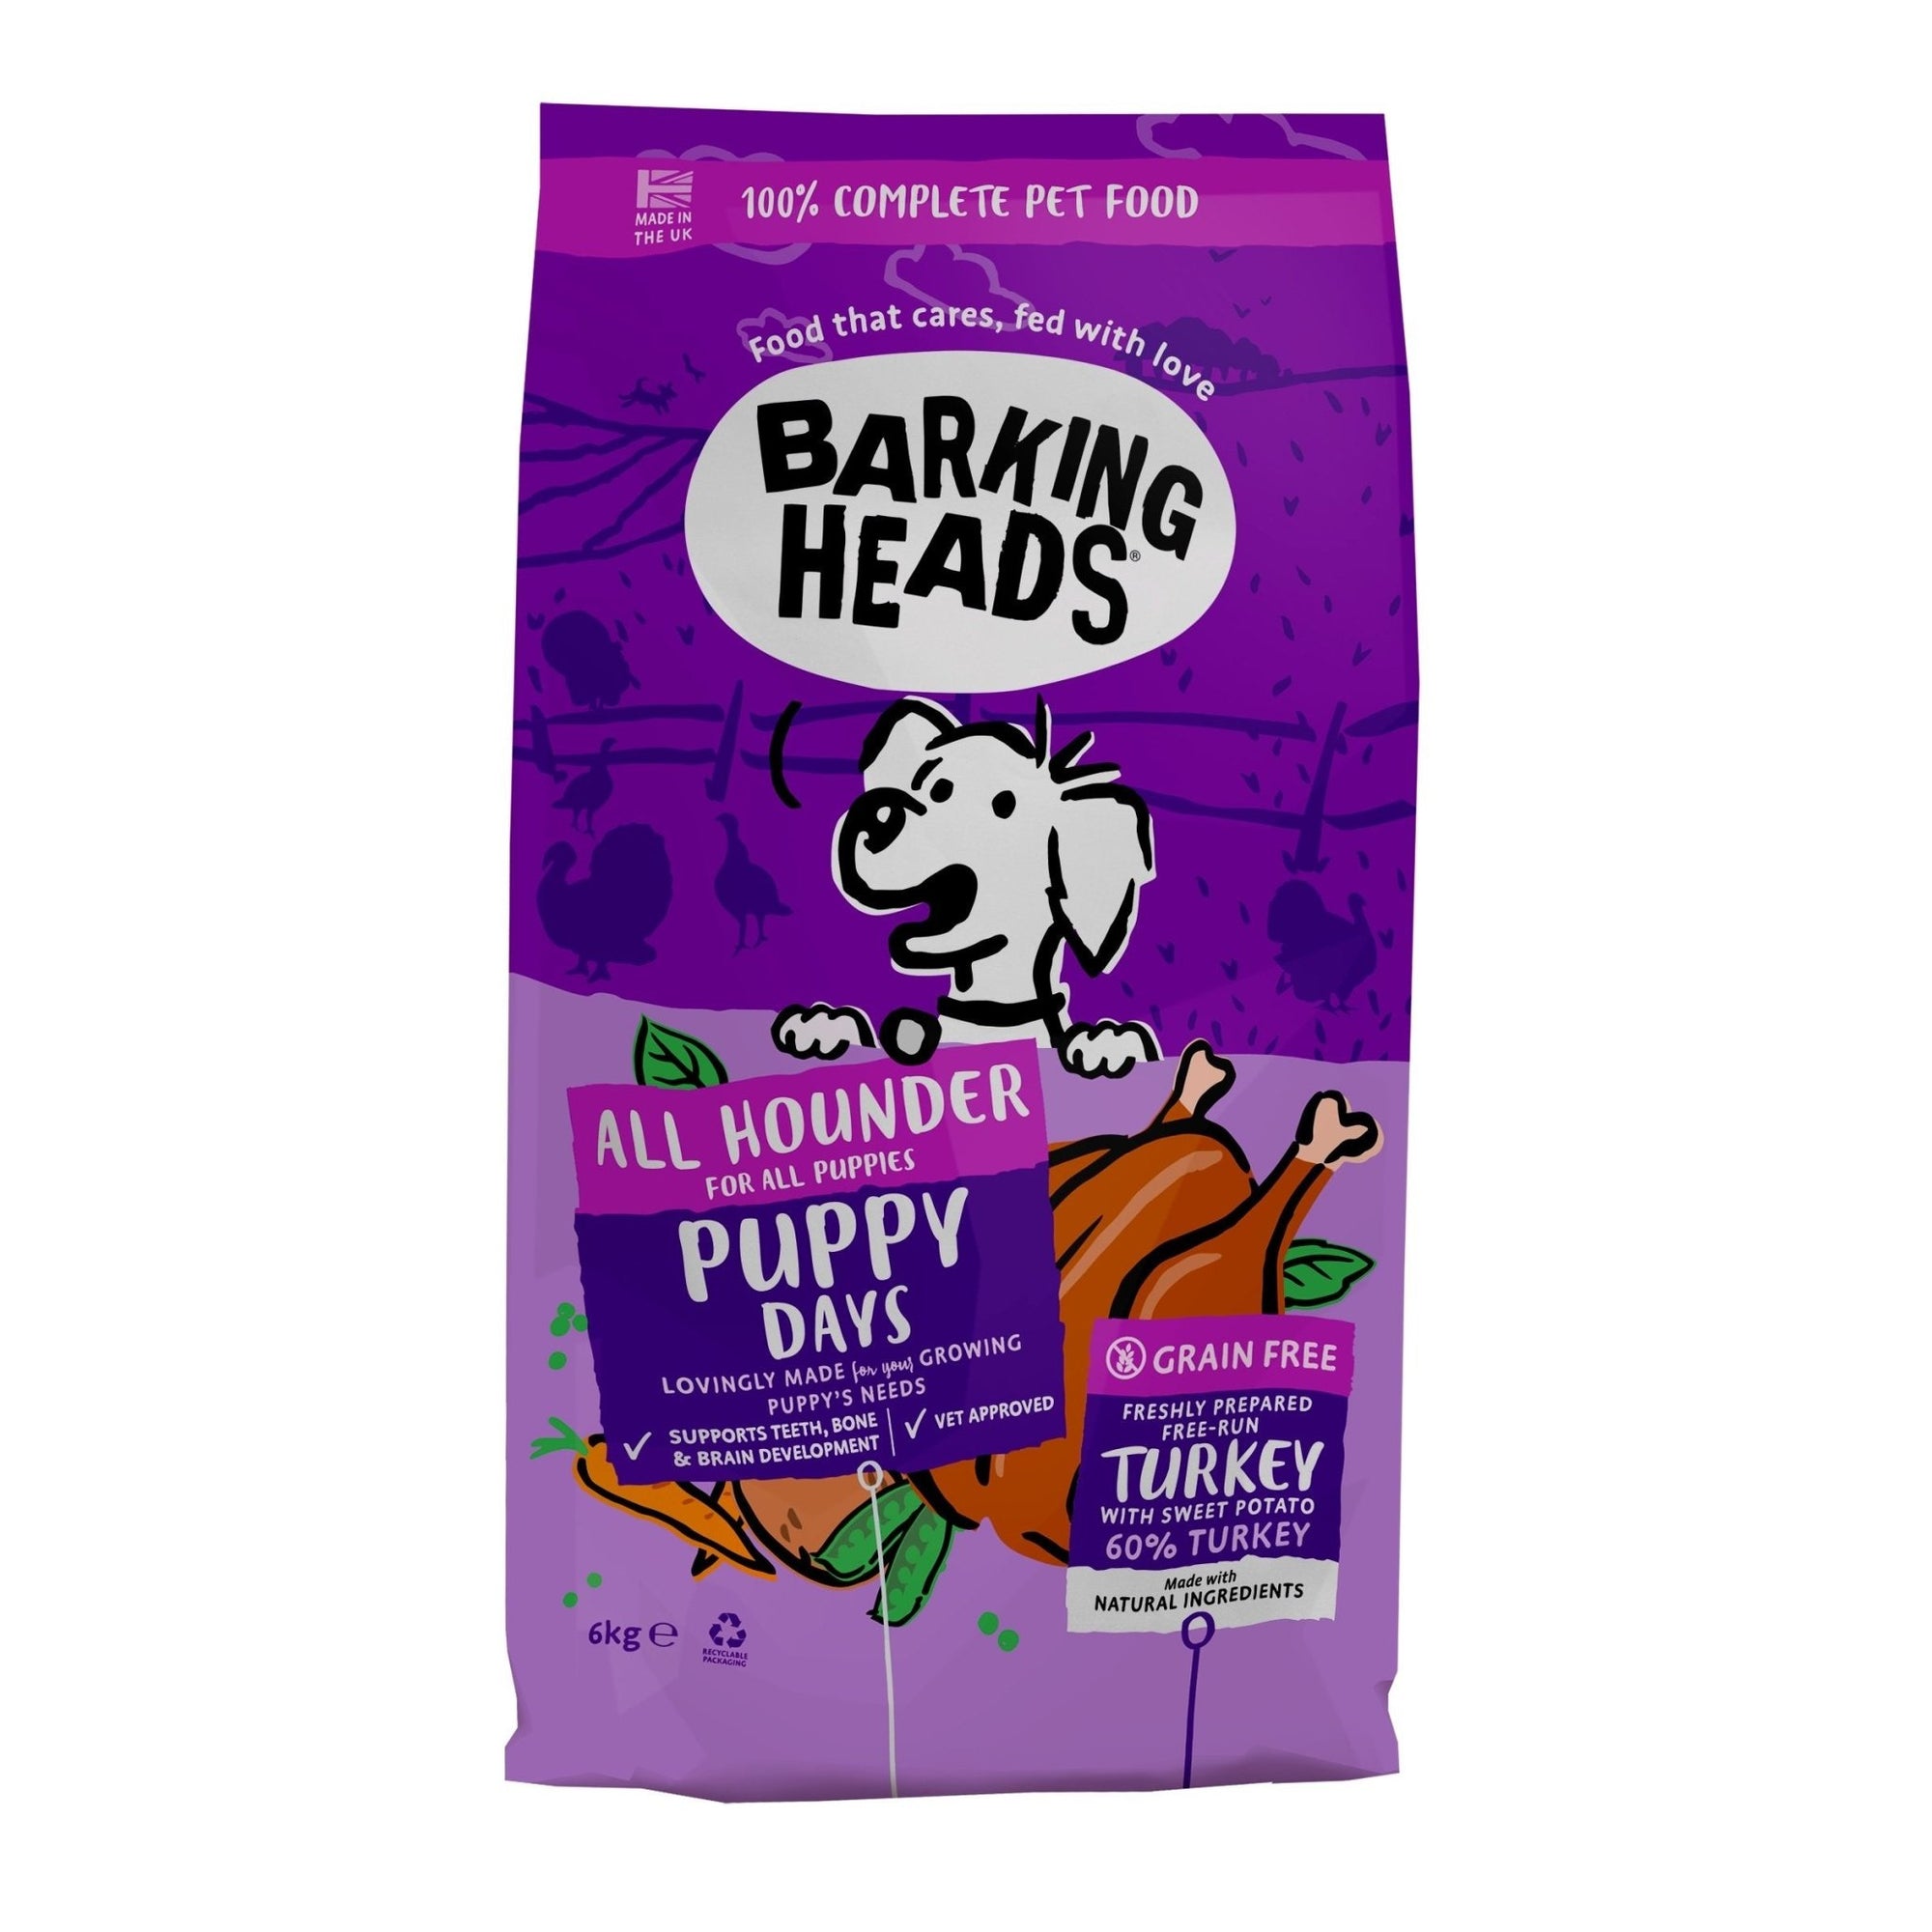 Barking Heads All Hounder Puppy Days Grain Free Turkey 6 kg, Barking Heads,